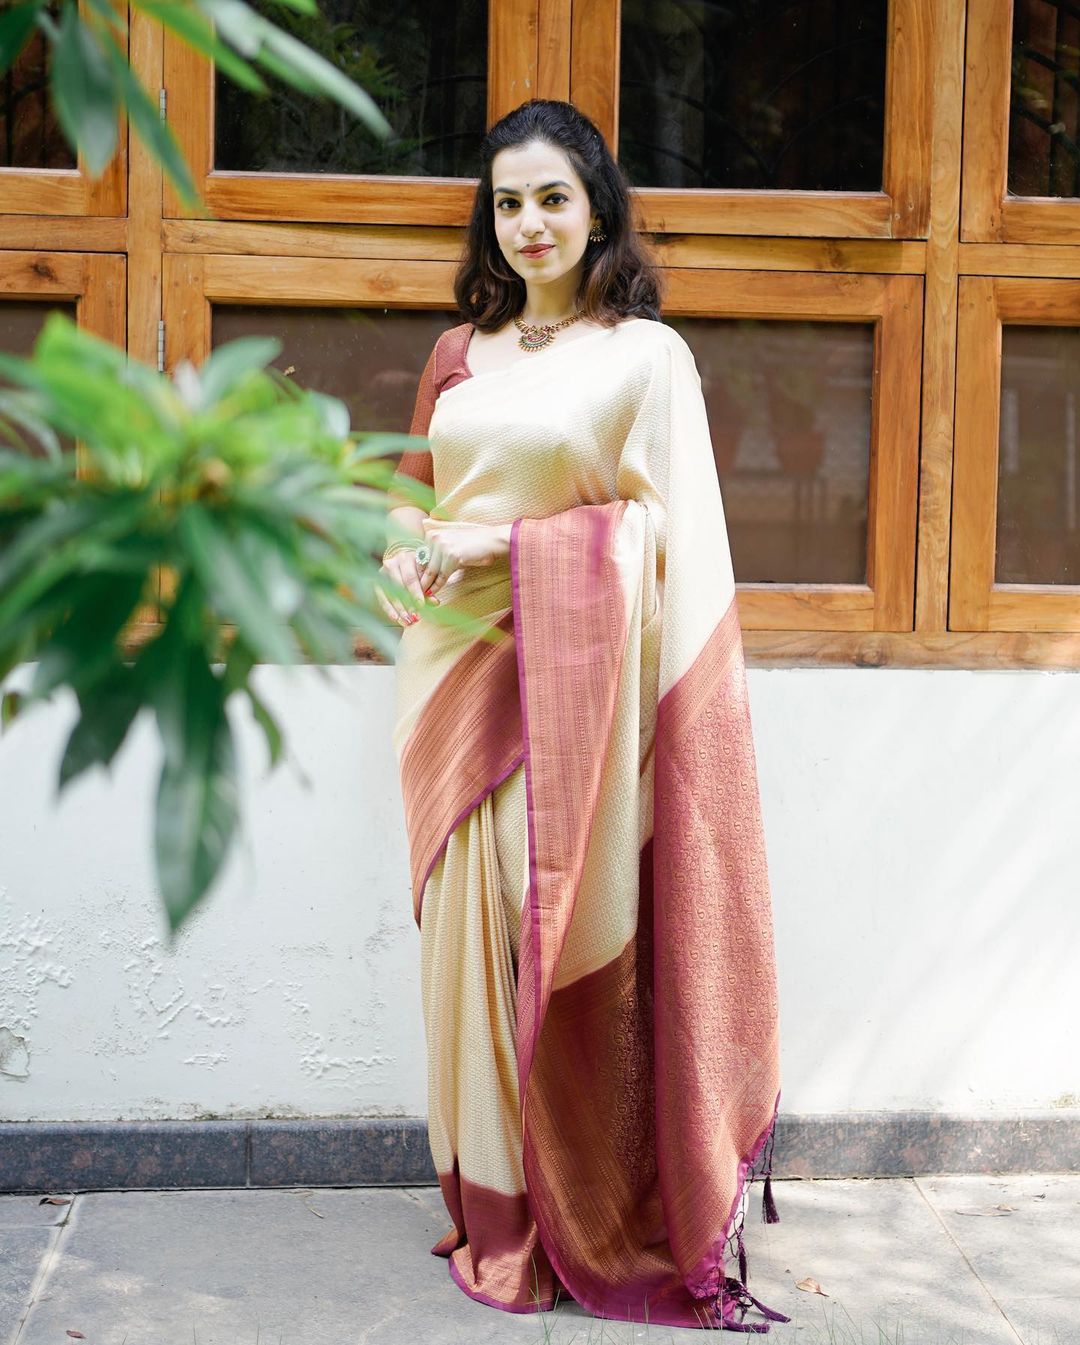 Murmurous Beige Soft Banarasi Silk Saree With Nemesis Blouse Piece - Colorful Saree